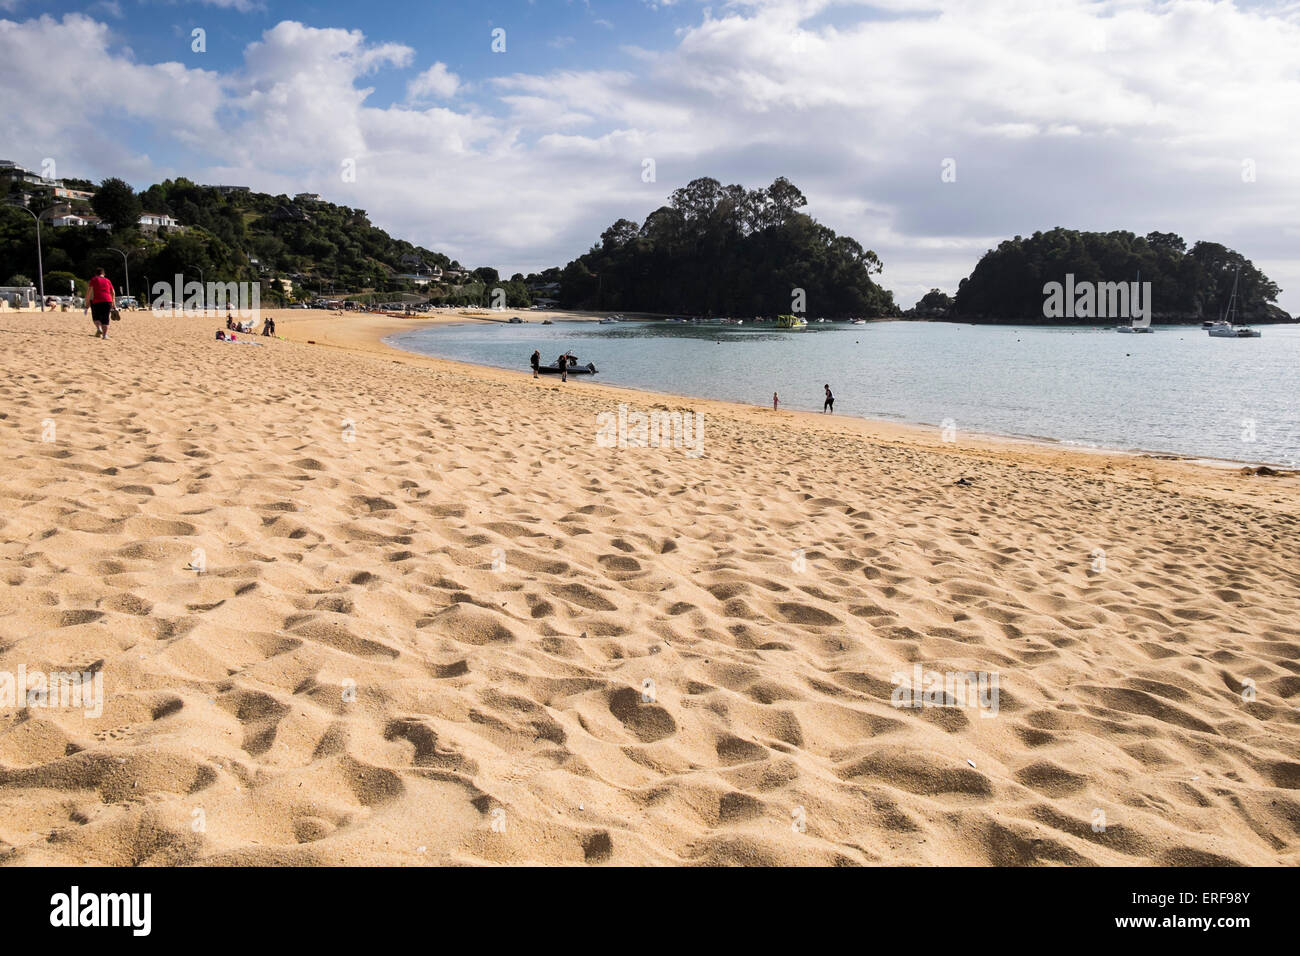 Golden sandy beach at Kaiteriteri in Abel Tasman, New Zealand. Stock Photo